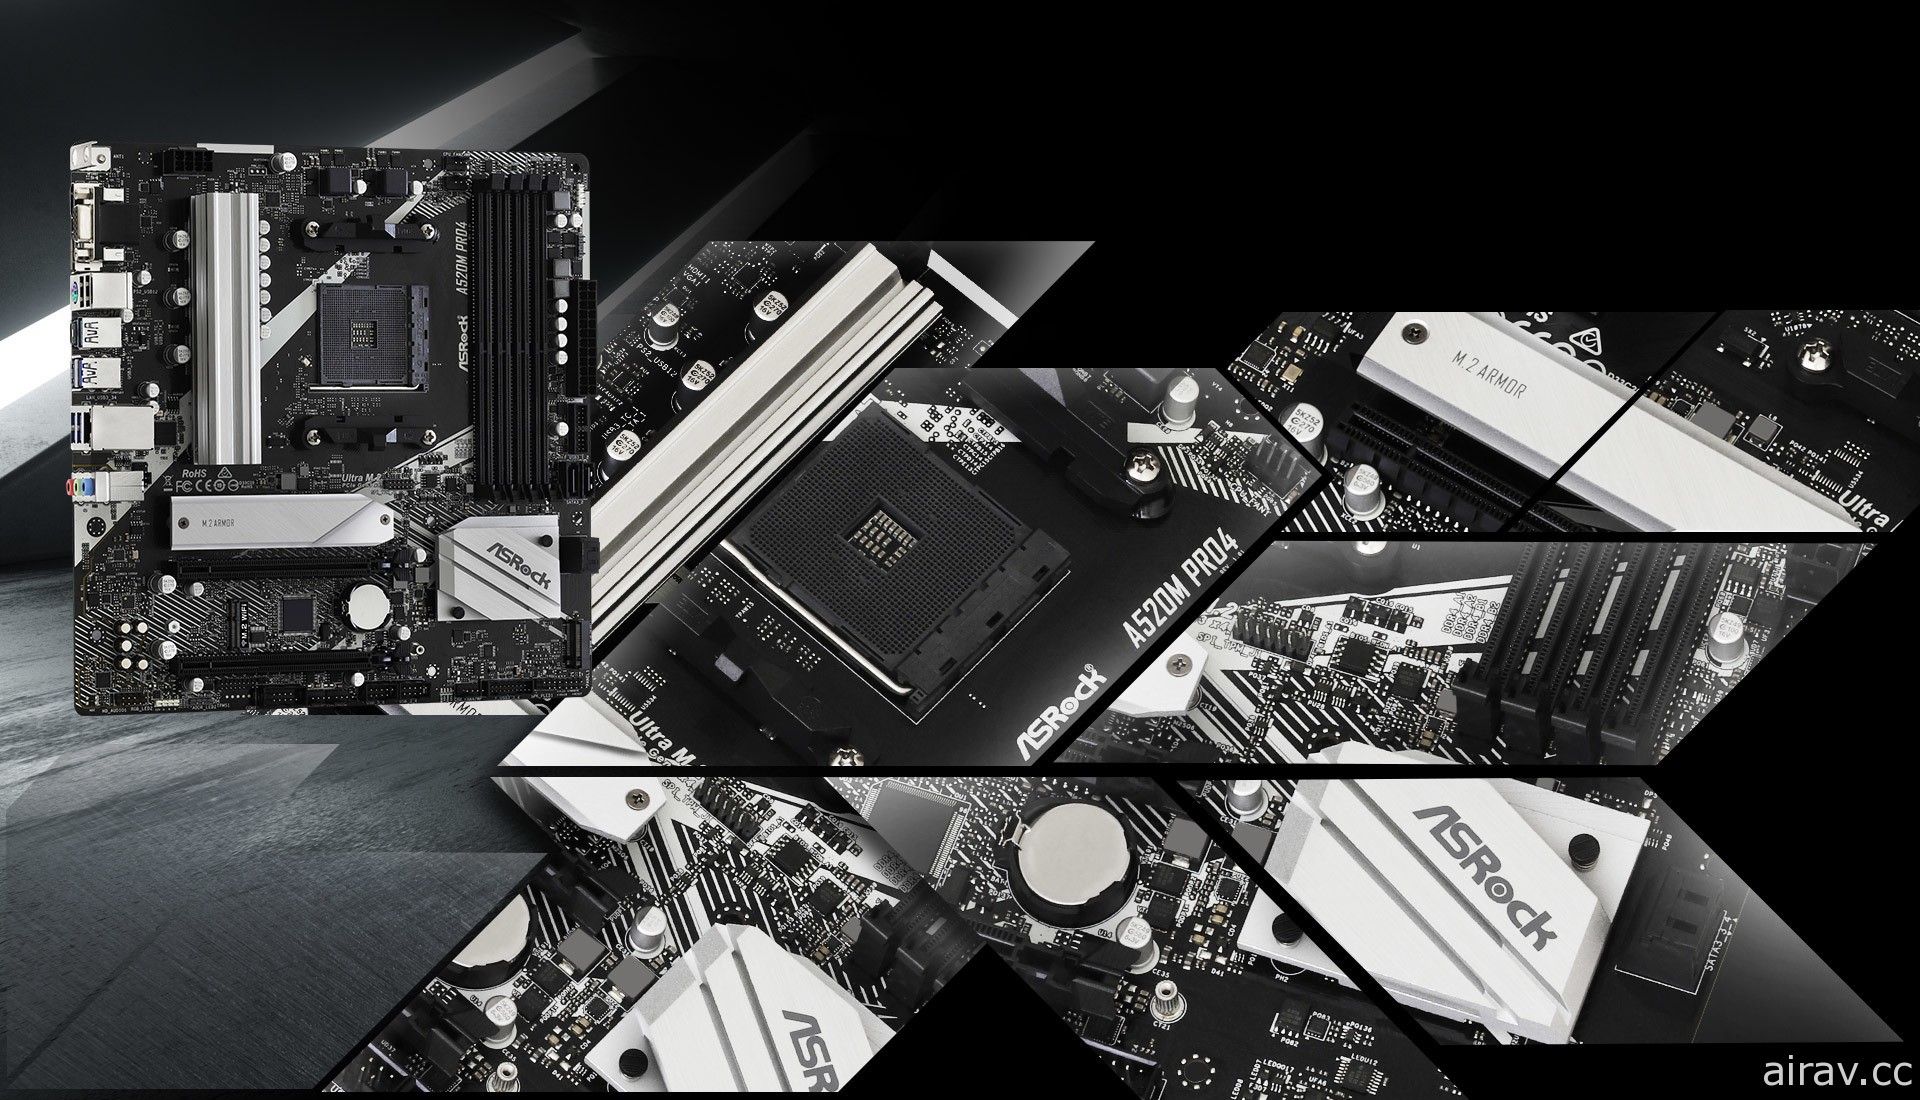 華擎科技發表 A520 系列主機板 支援 AMD 第三代 Ryzen 桌上型處理器